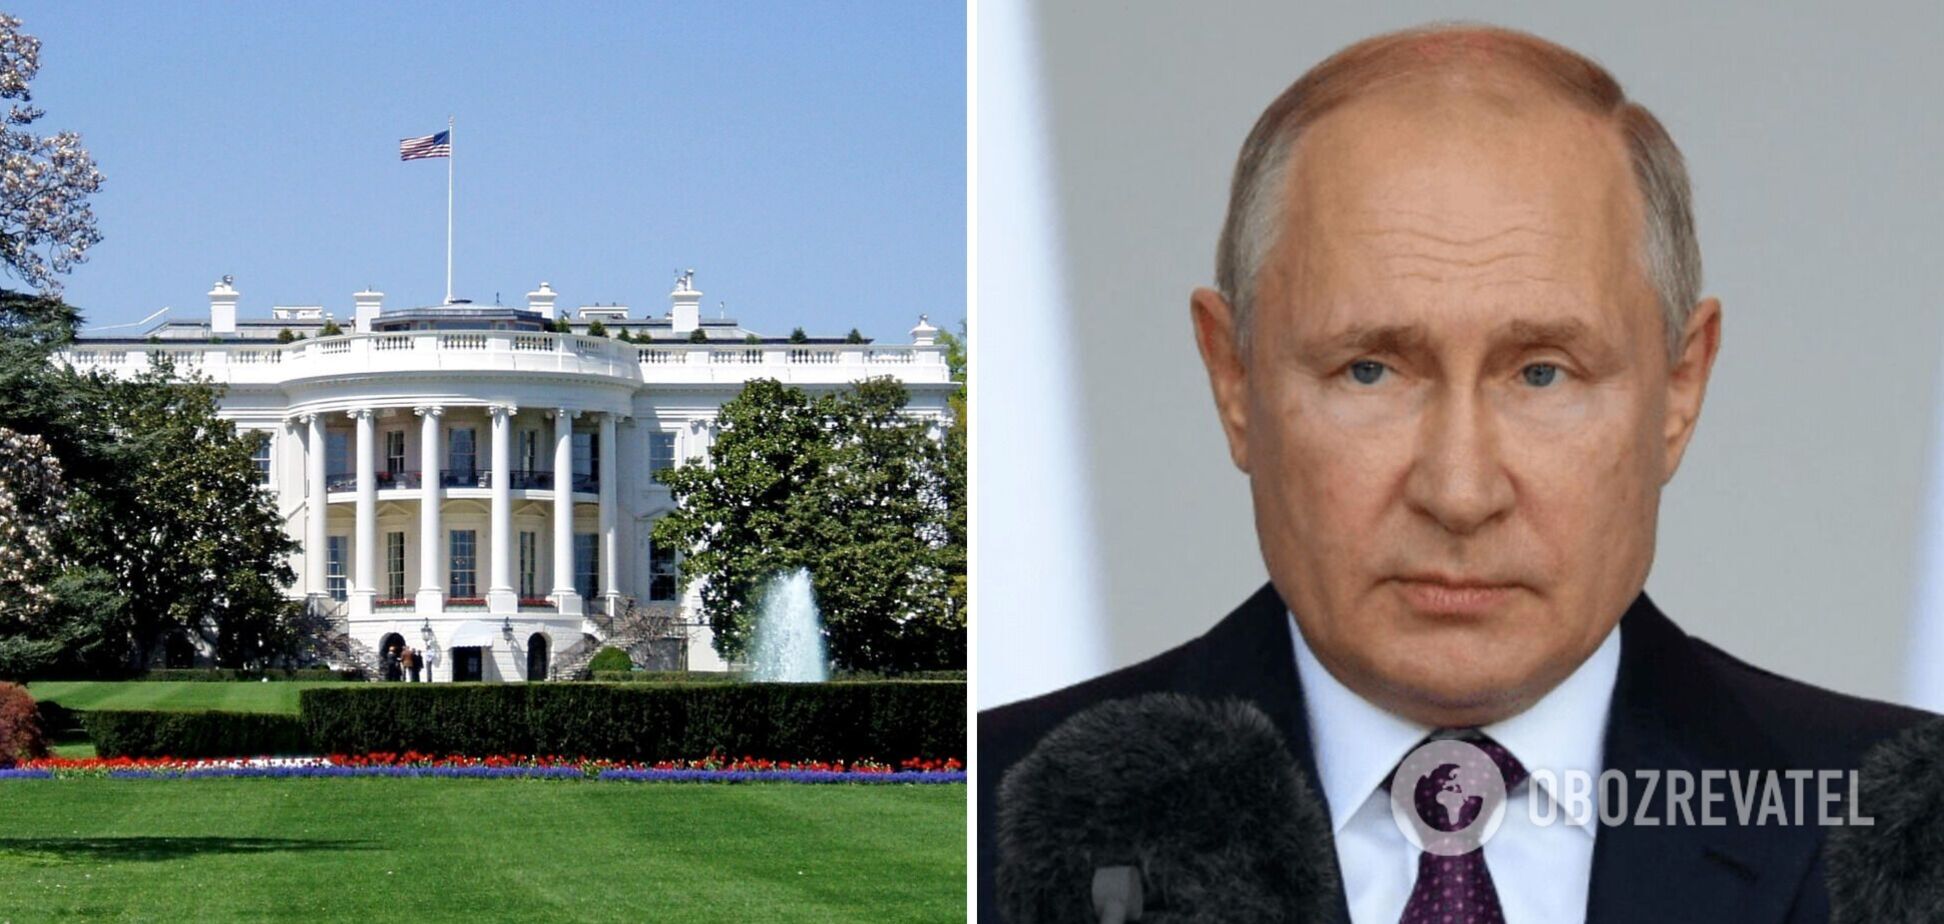 Явка з повинною Путіна: чекаємо на реакцію США